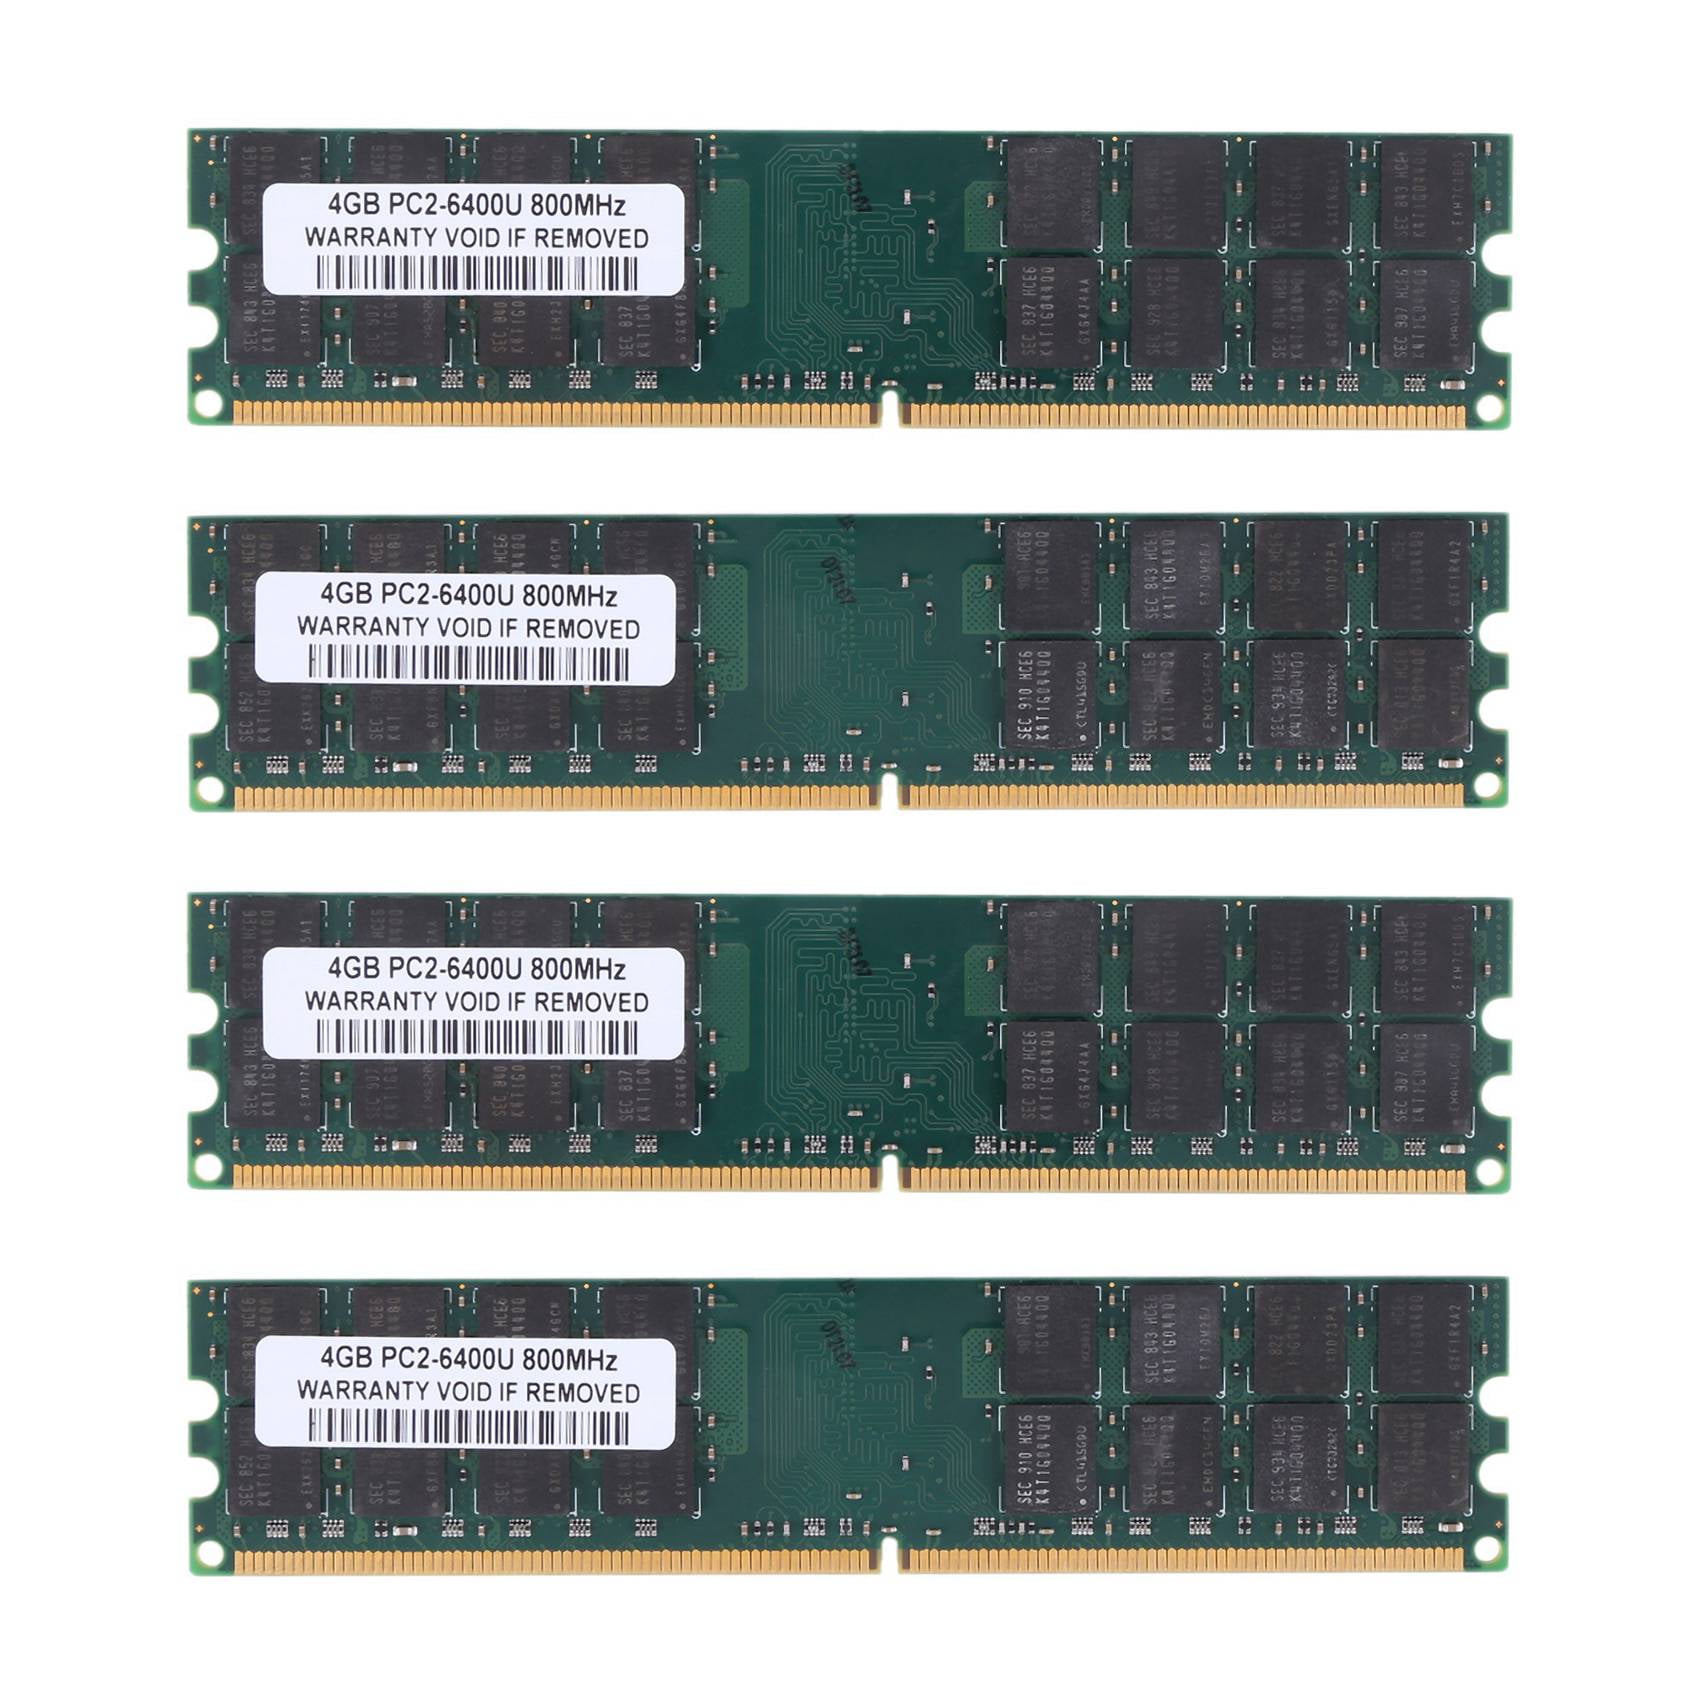 240-pin DIMM, 800MHz 4GB kit Genuine A-Tech Brand 2GBx2 DDR2 PC2-6400 Desktop Memory Modules